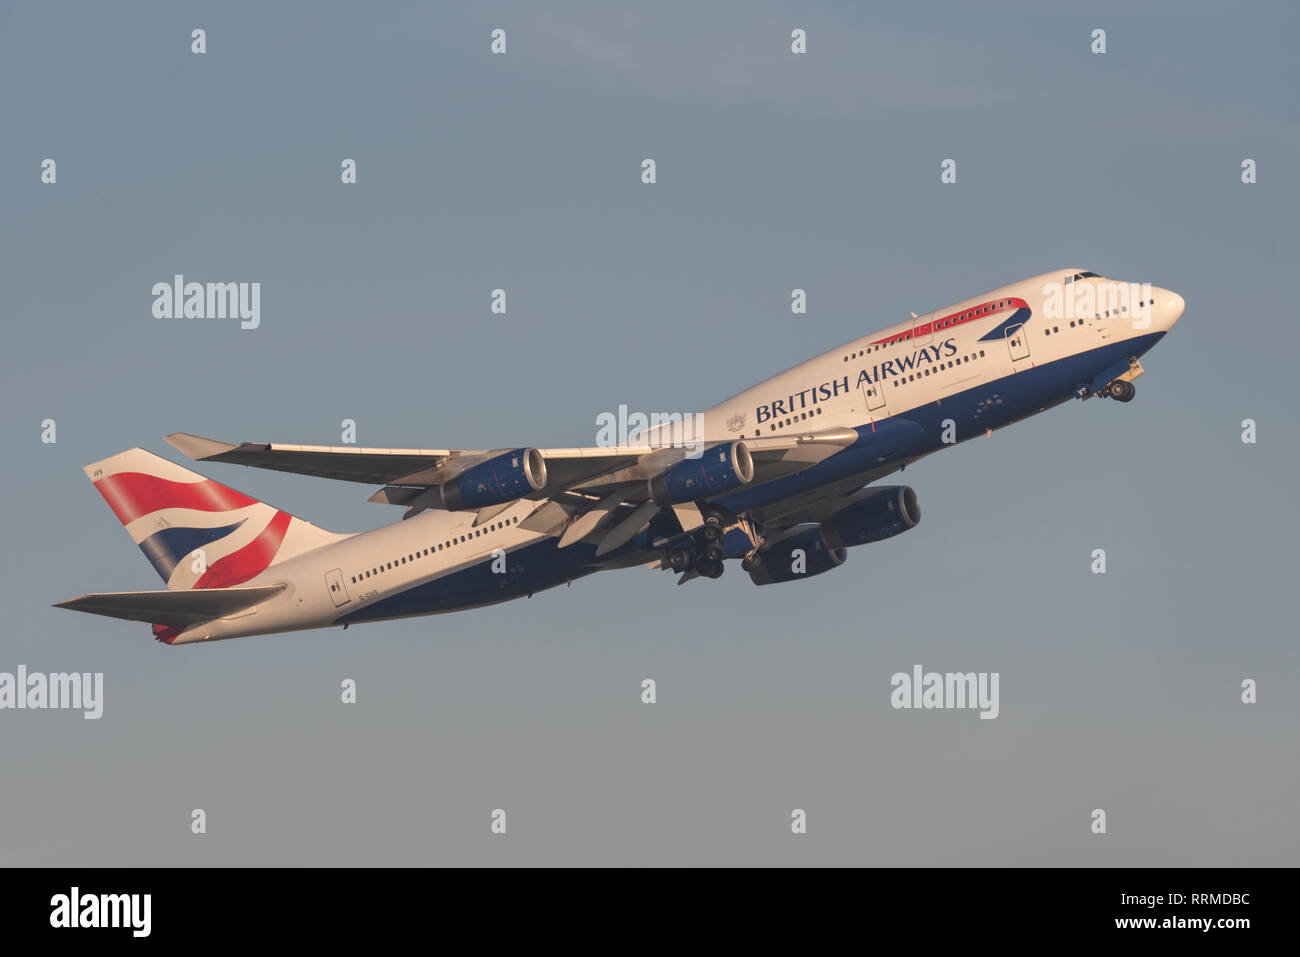 British Airways Boeing 747 Jumbo Jet aereo jet piano G-civiltà decollo dall'Aeroporto Heathrow di Londra, Regno Unito. Compagnia aerea della partenza del volo. 747-400 Foto Stock